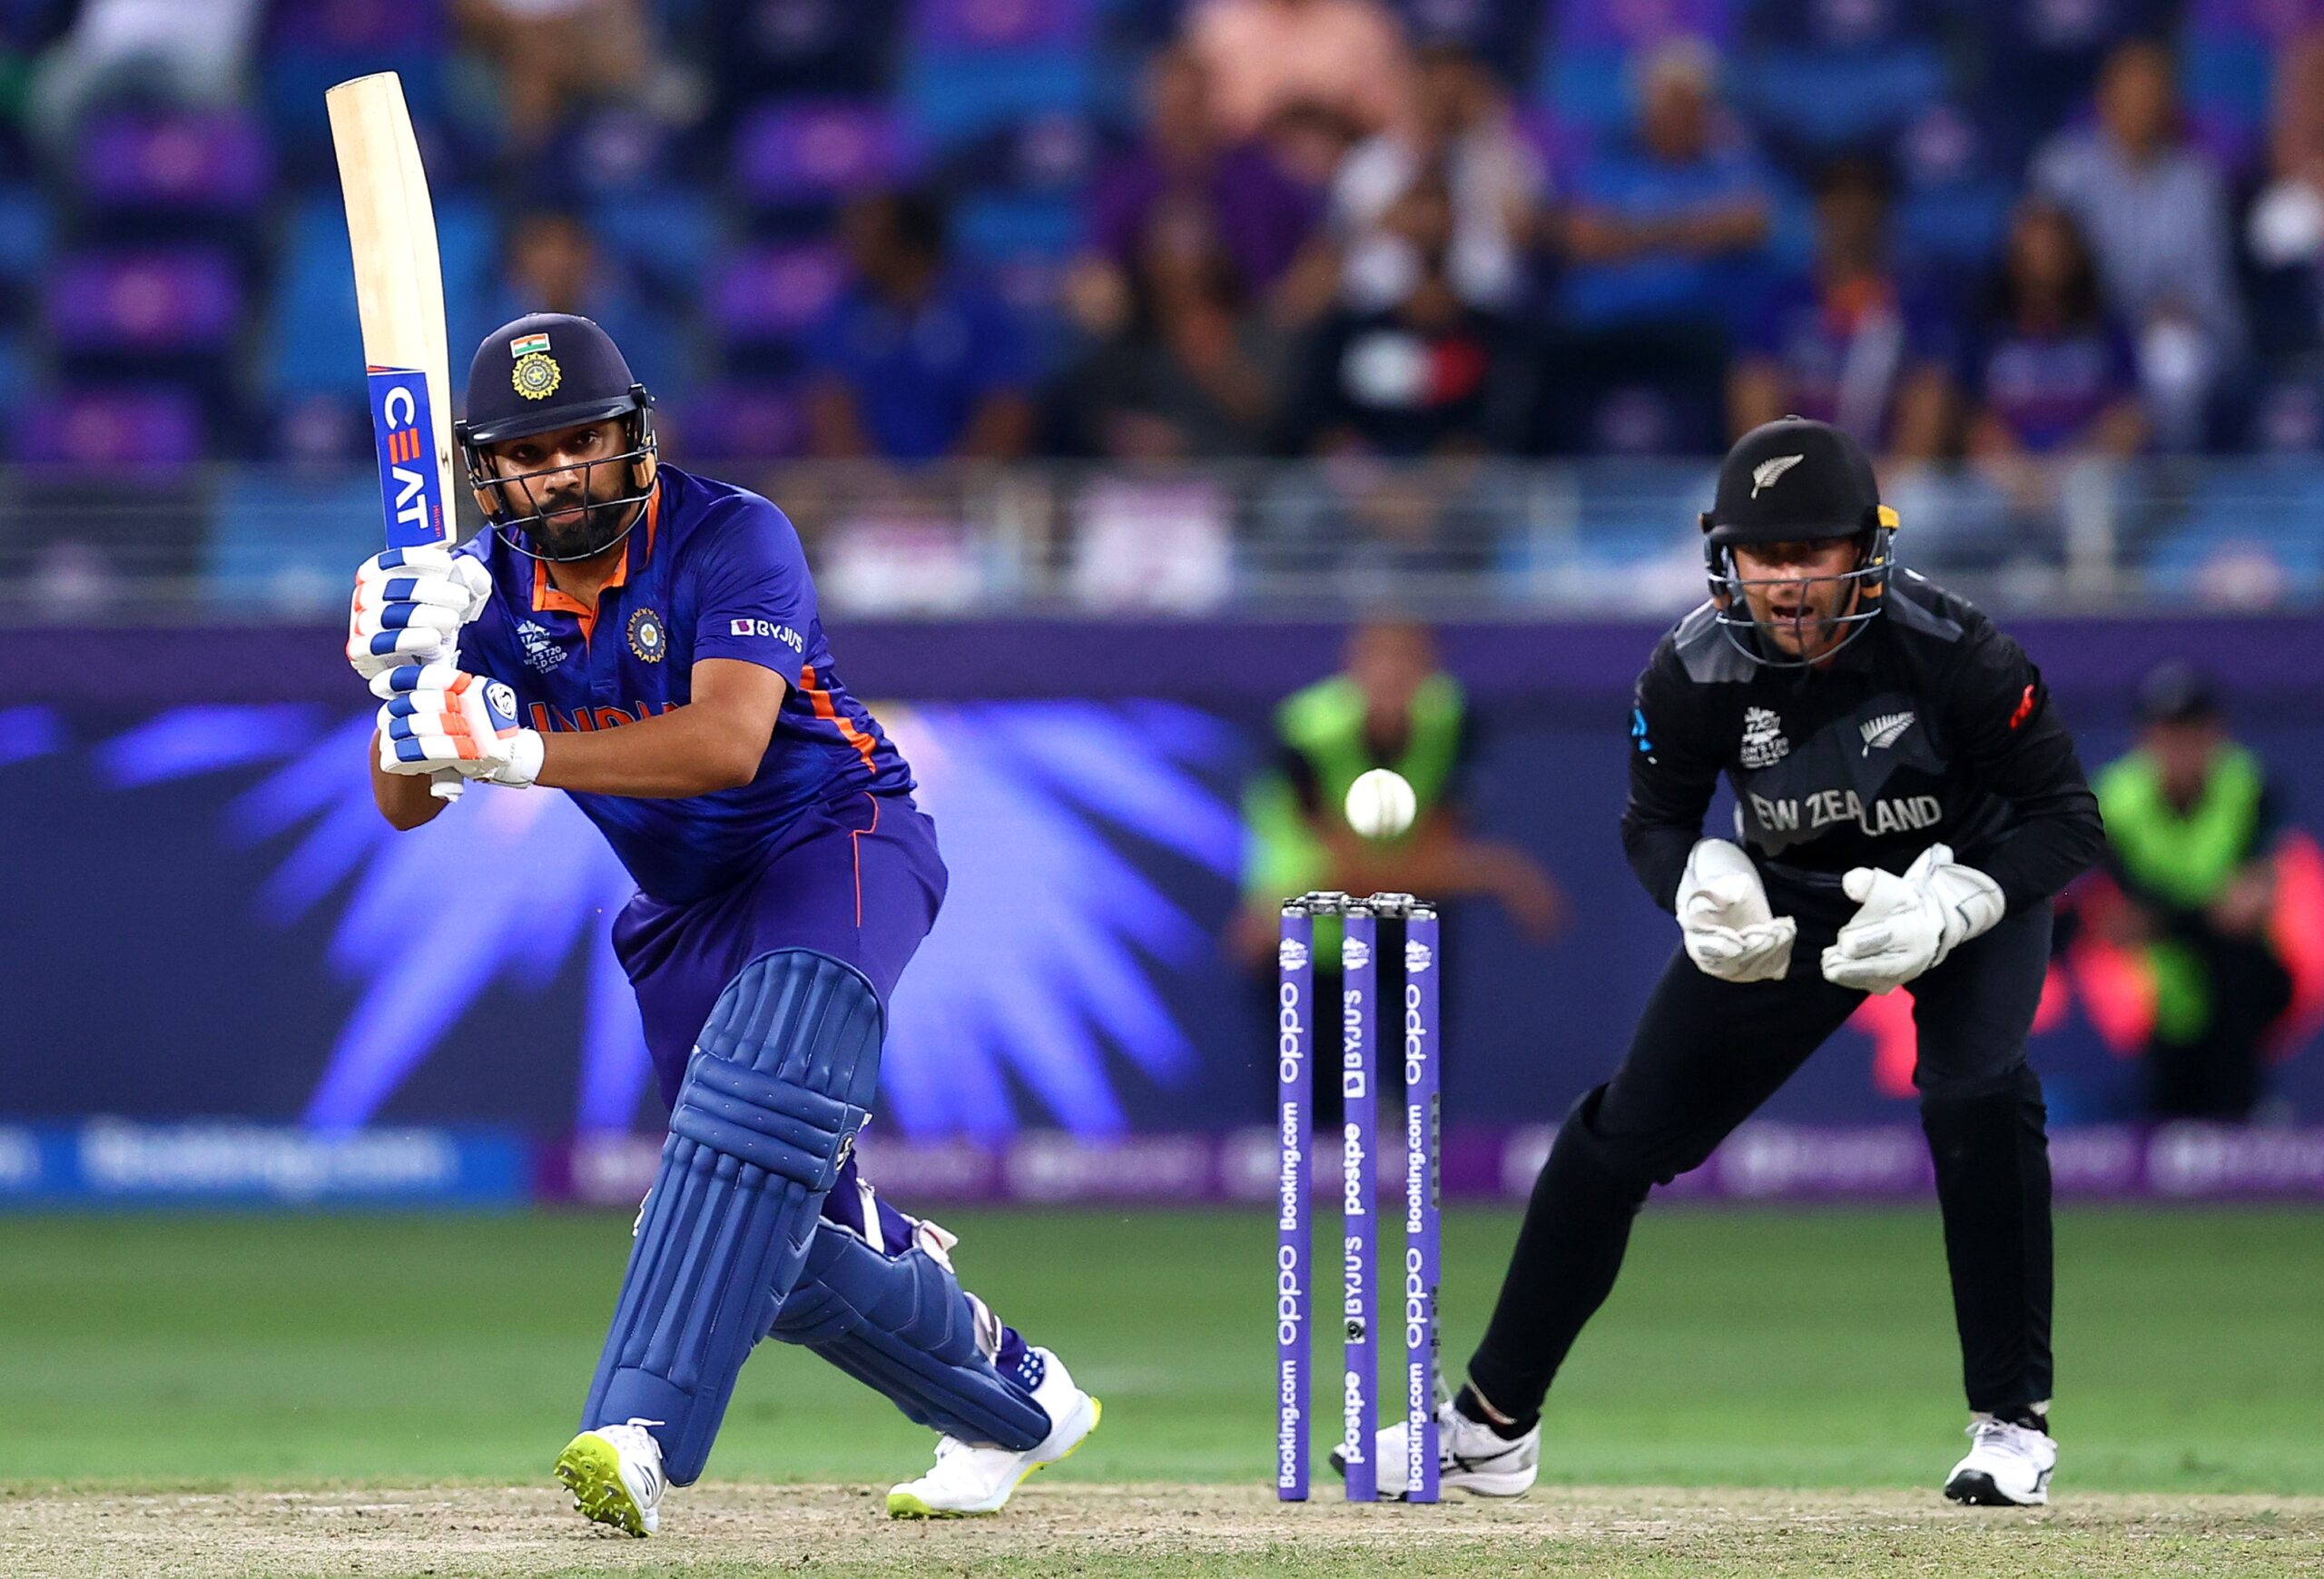 ICC T20 World Cup 2021: न्यूजीलैंड के खिलाफ भारत की शर्मनाक हार, सेमीफाइनल की रेस से लगभग बाहर हुई टीम 4